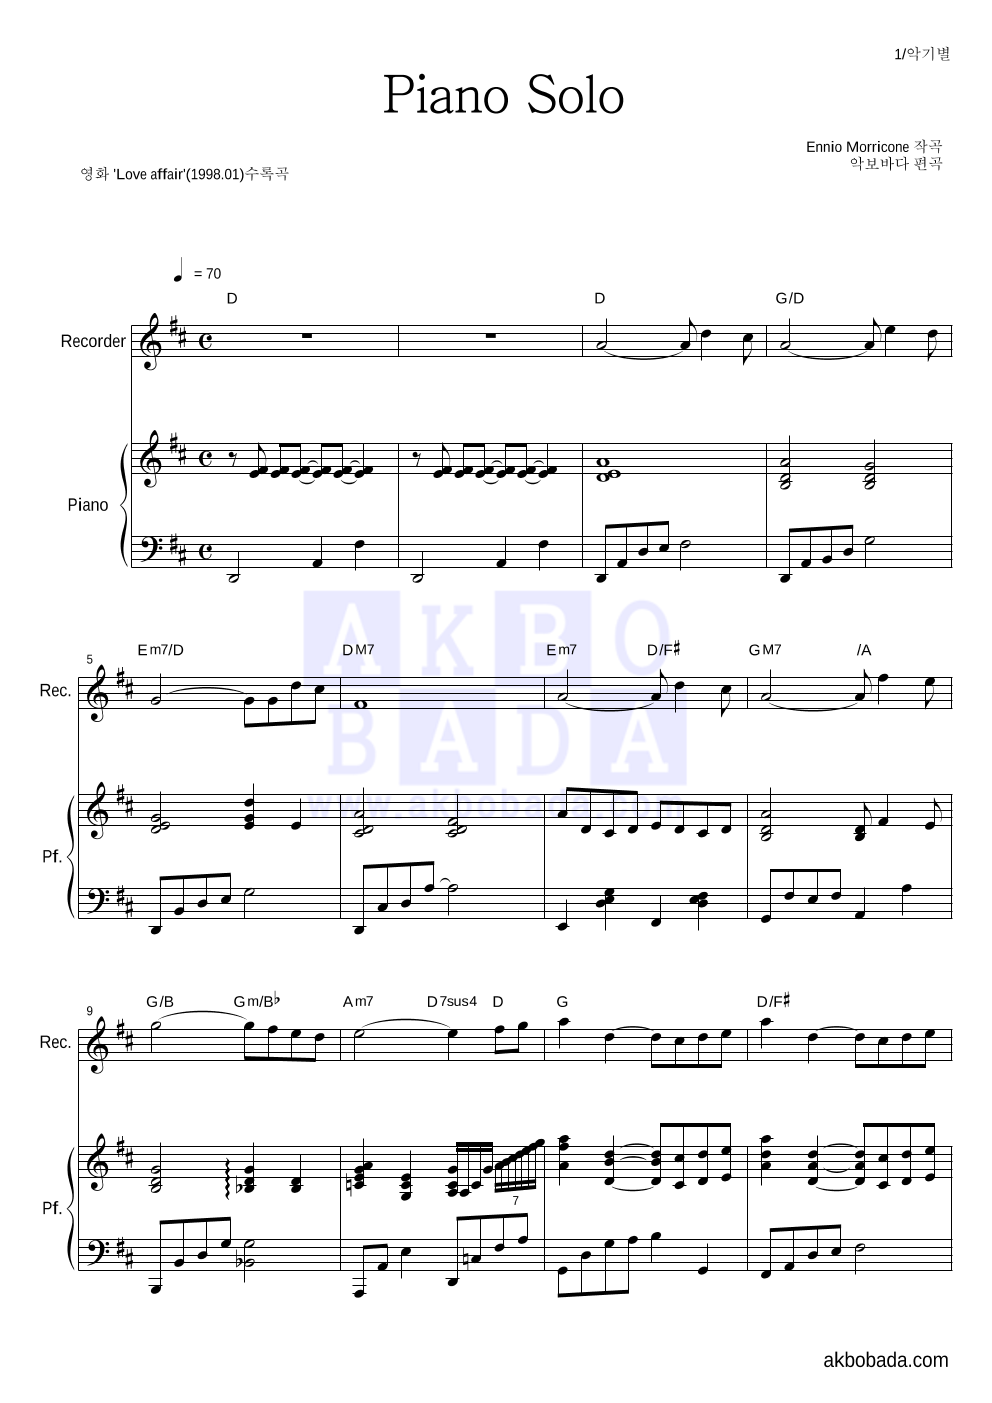 Ennio Morricone - Piano Solo 리코더&피아노 악보 